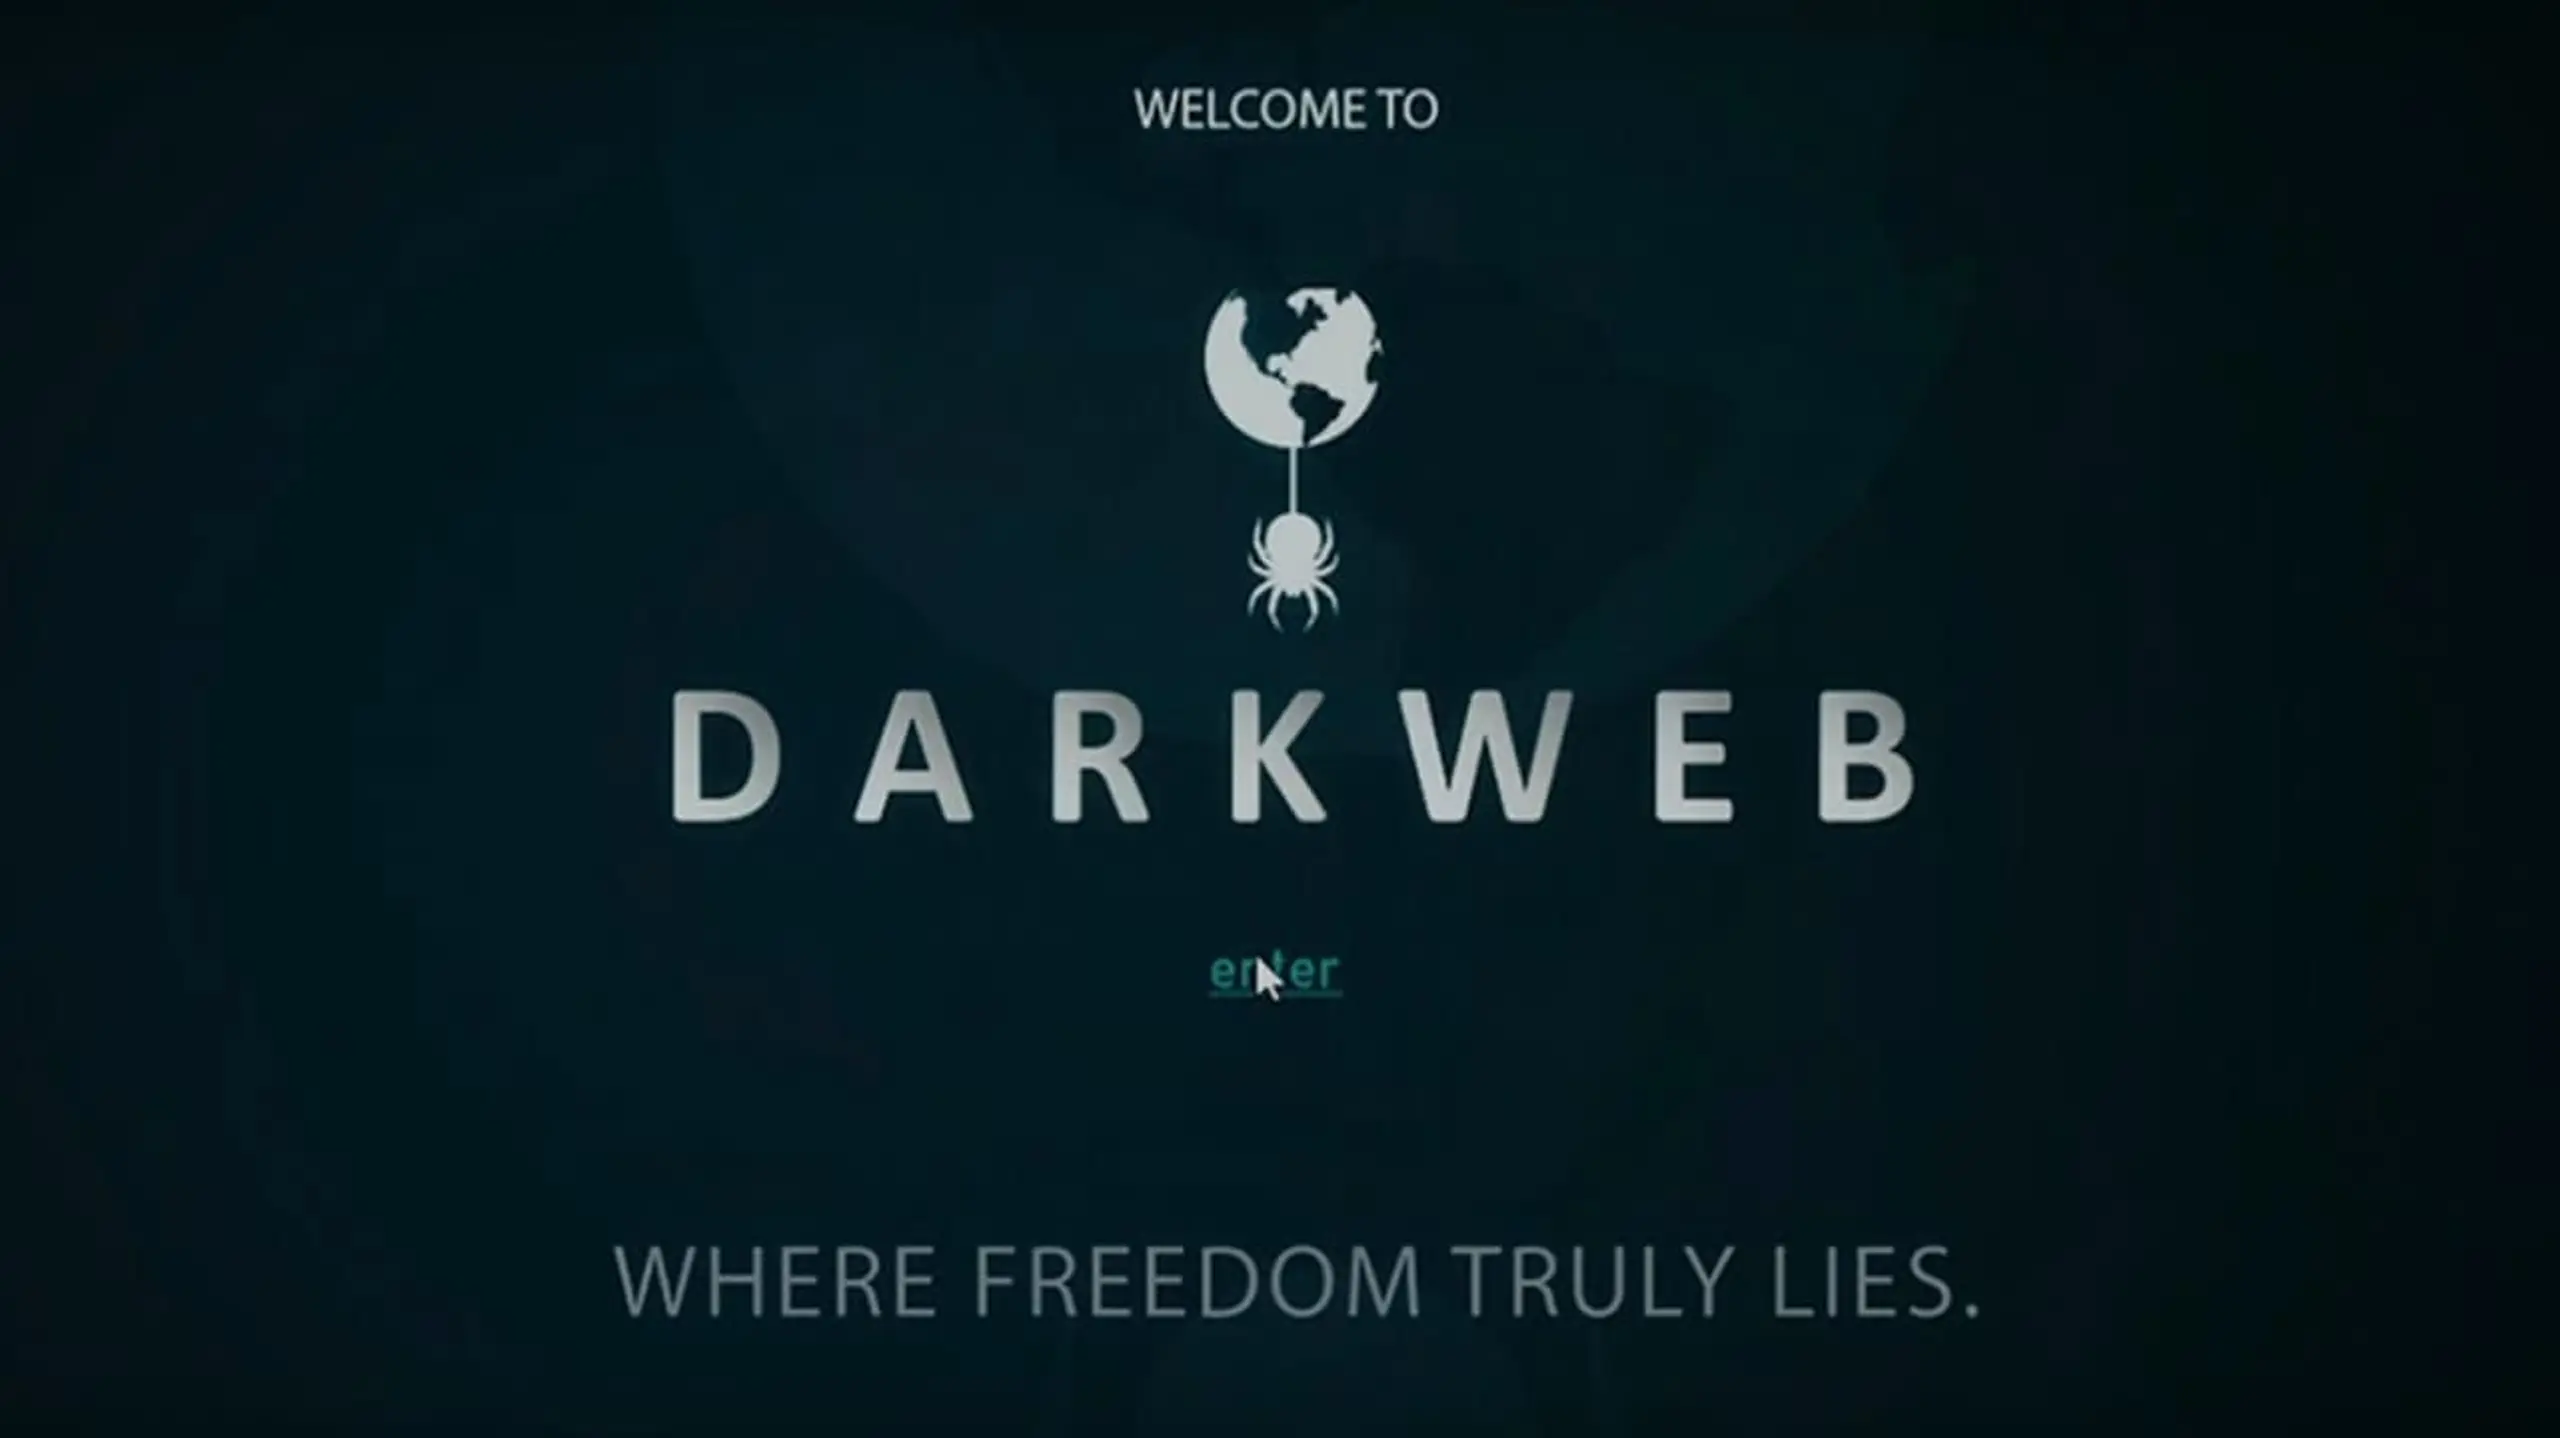 Dark Web - Kontrolle ist eine Illusion